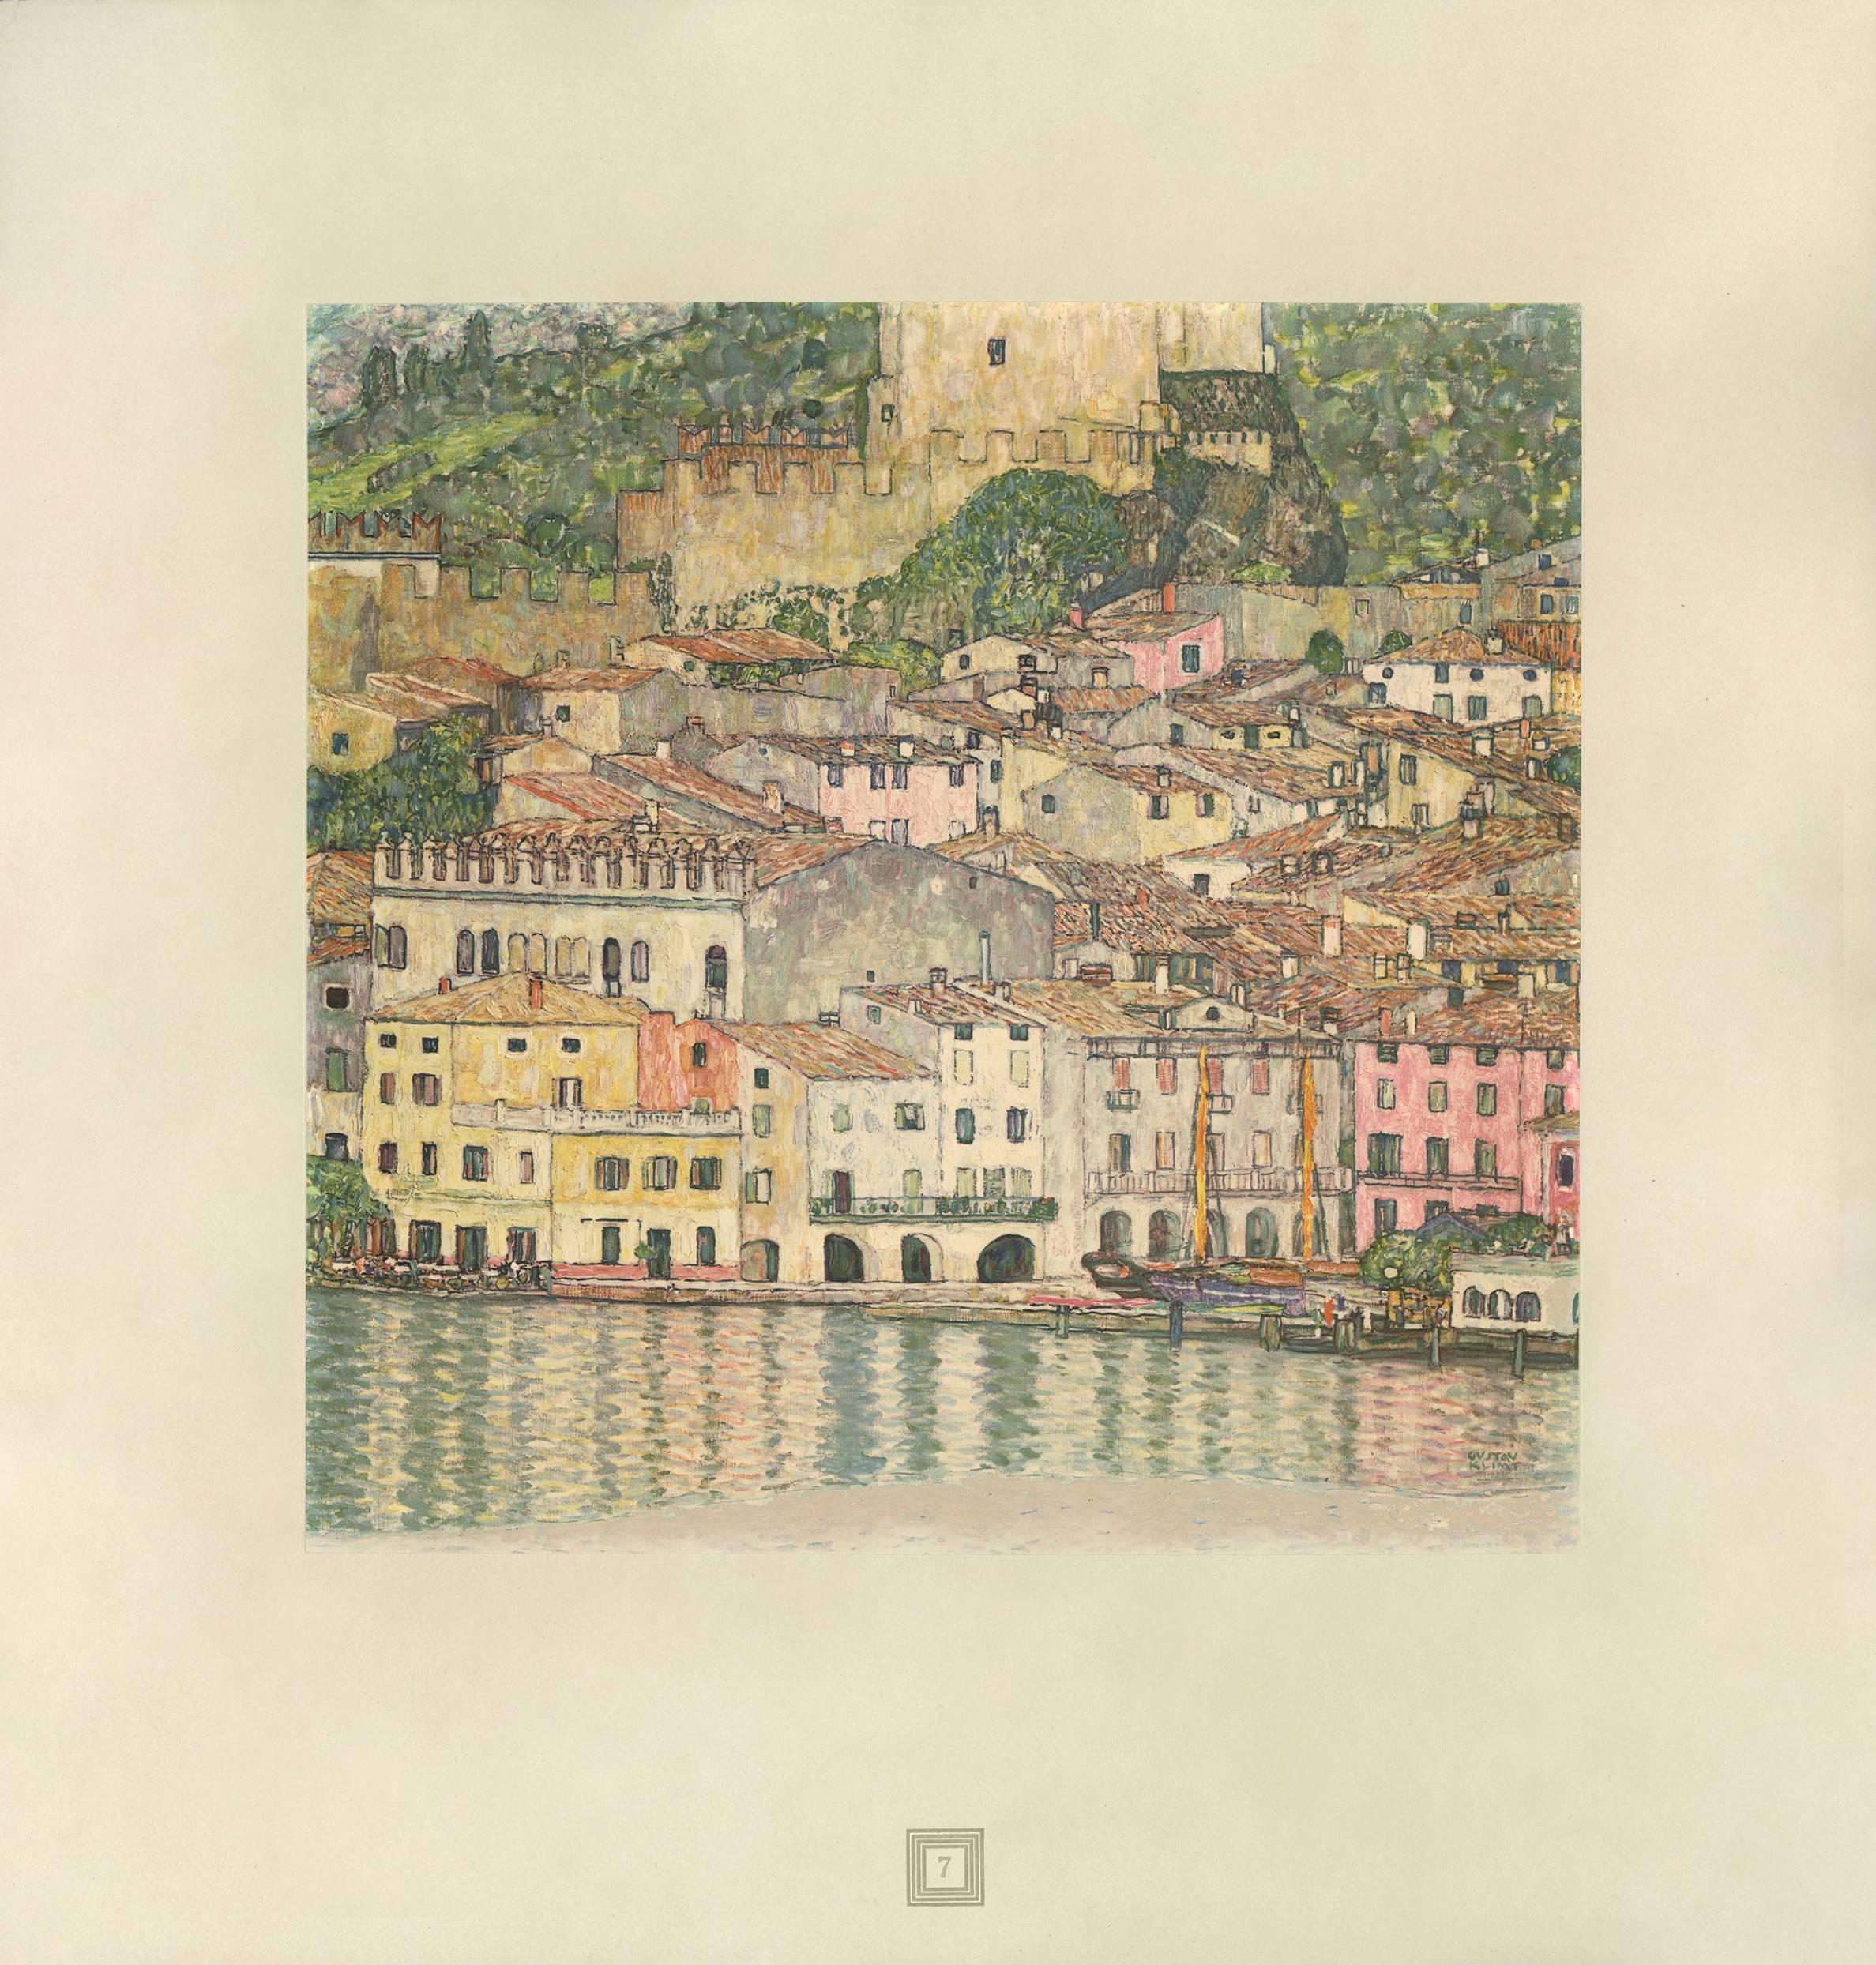 Max Eisler Eine Nachlese folio “Malcesine on Lake Garda" collotype print